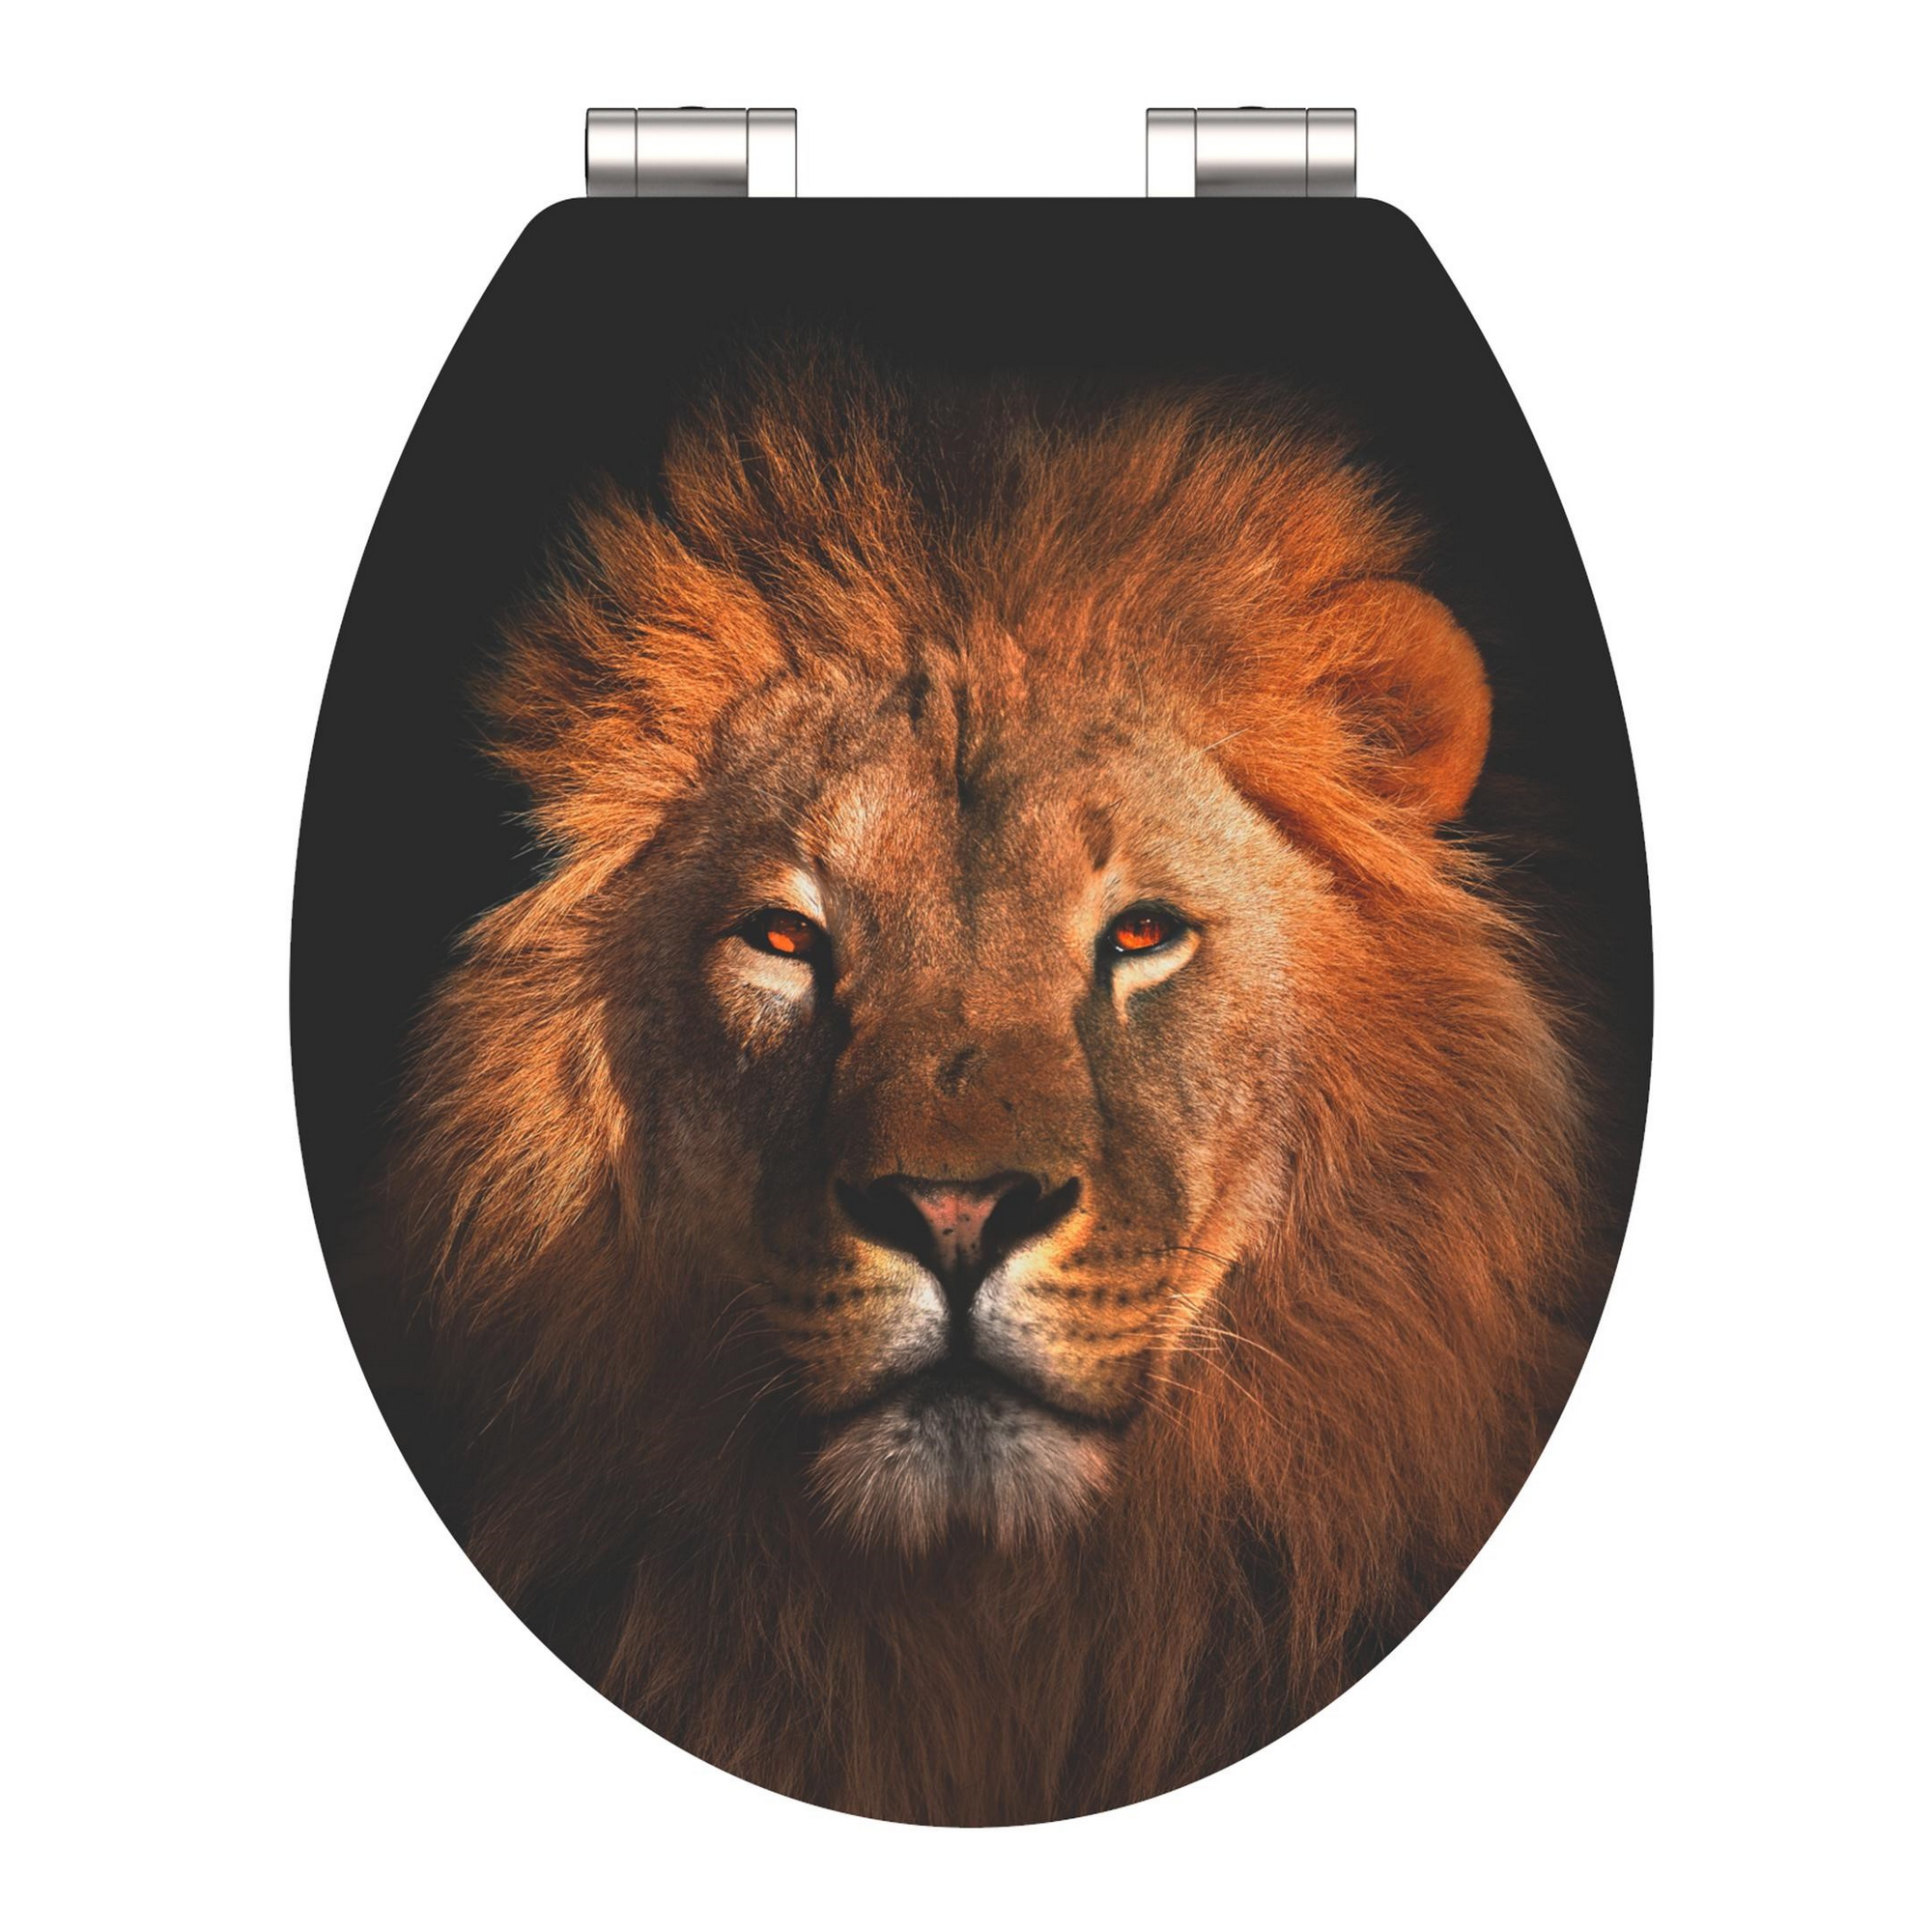 WC-Sitz 'Lion HG' mit Absenkautomatik schwarz/braun 37 x 43 cm + product picture